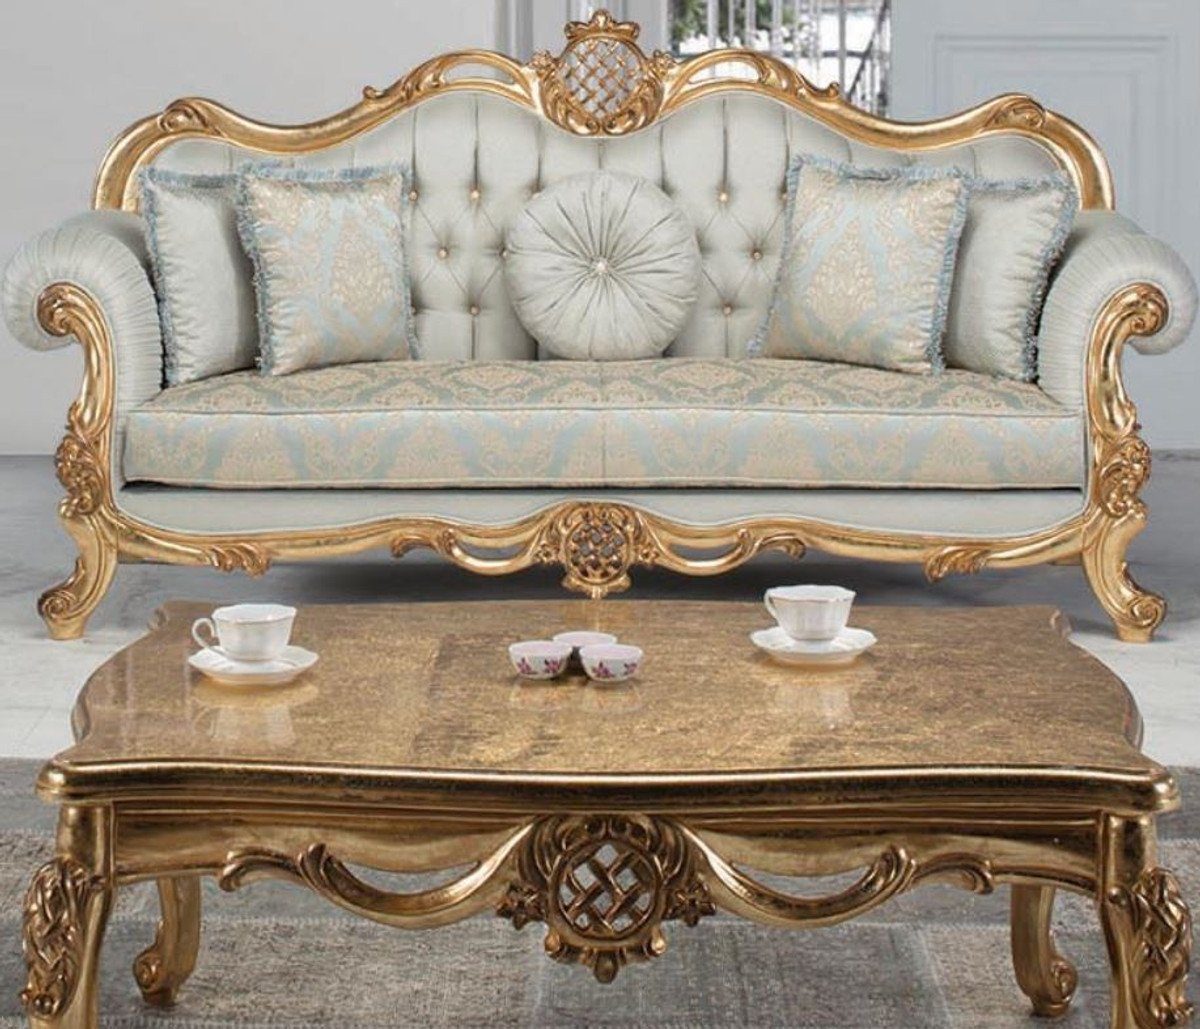 Casa Padrino Couchtisch Luxus Barock Couchtisch Antik Gold 118 x 87 x H. 50 cm - Massivholz Wohnzimmertisch - Möbel im Barockstil | Couchtische